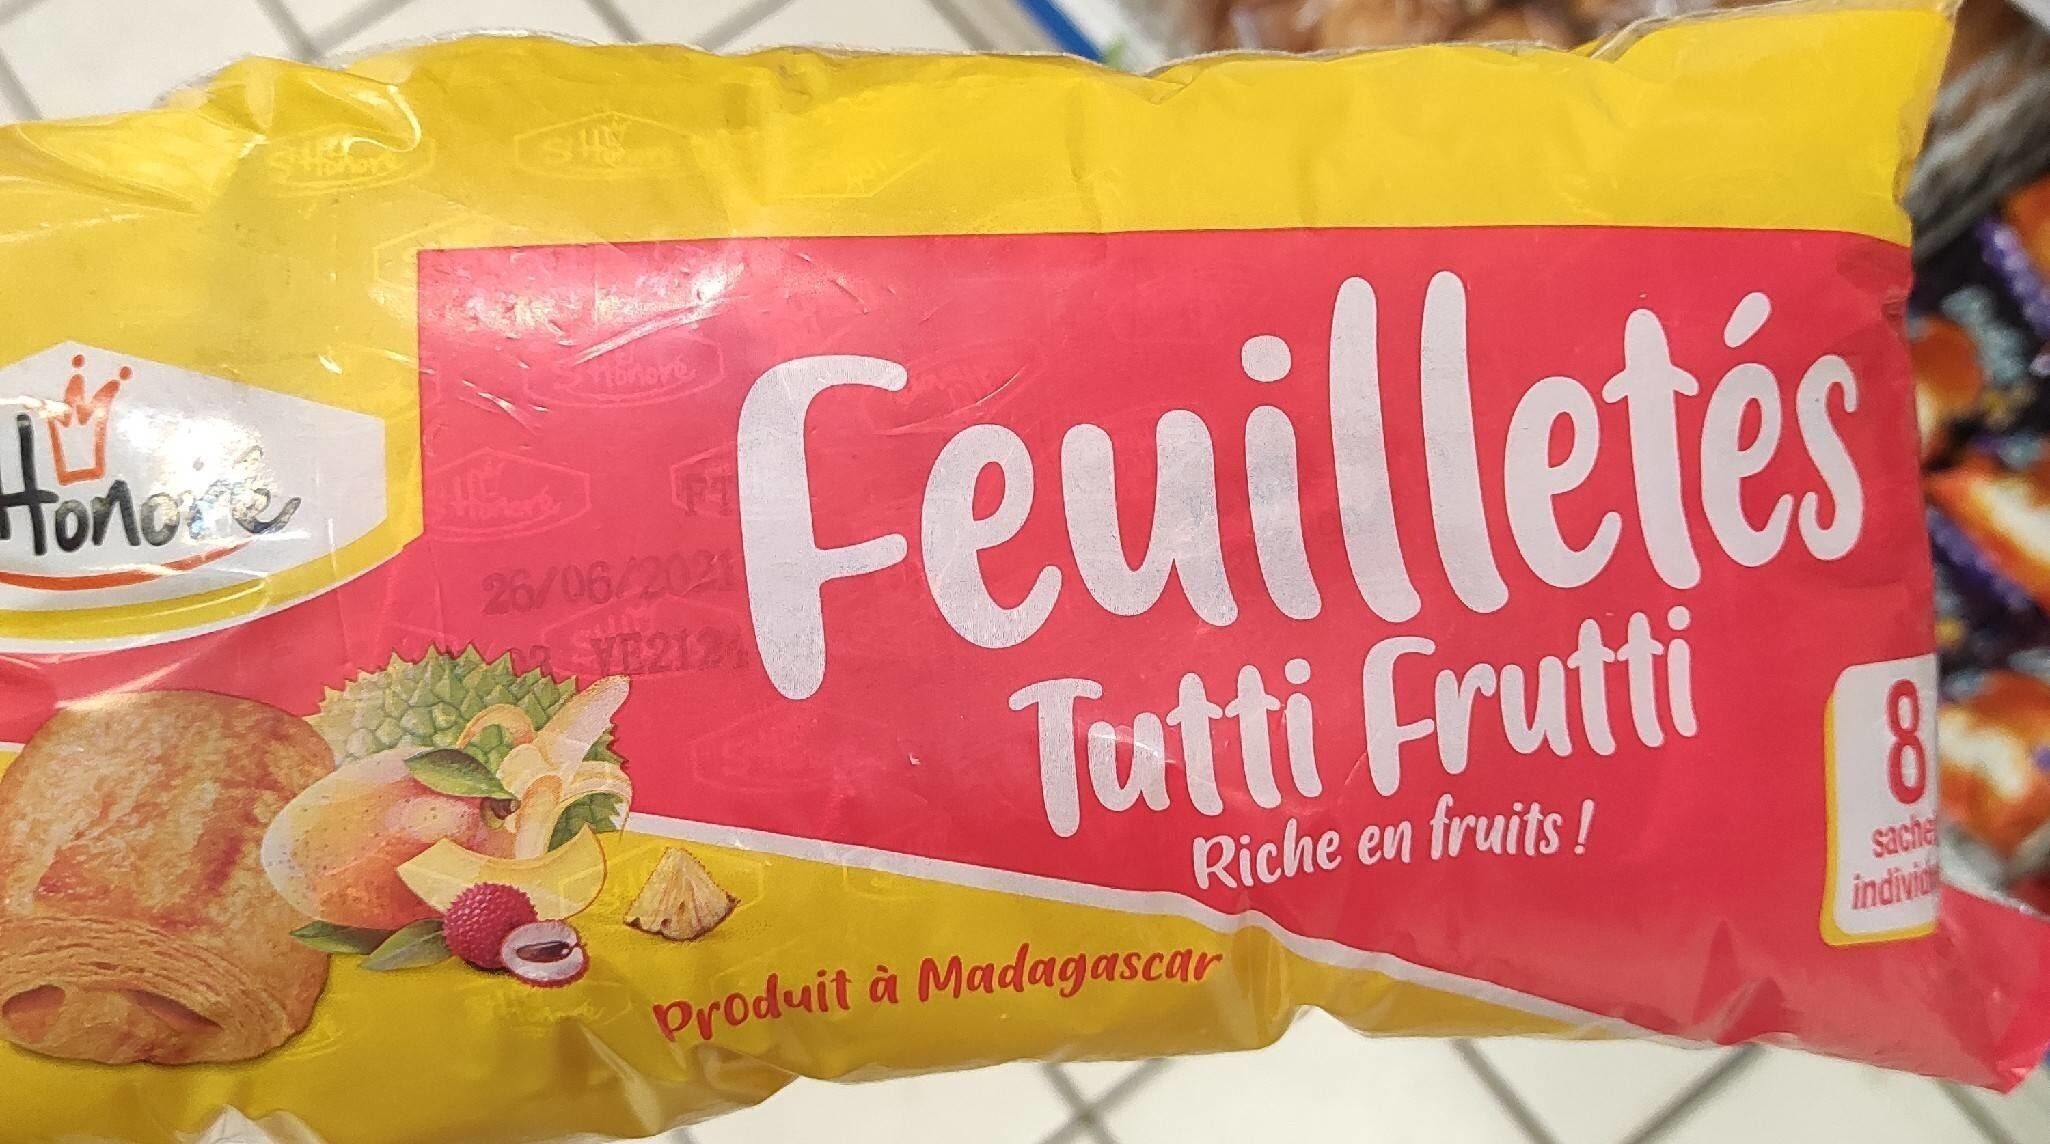 St Honoré feuilletés Tutti frutti - Produit - fr